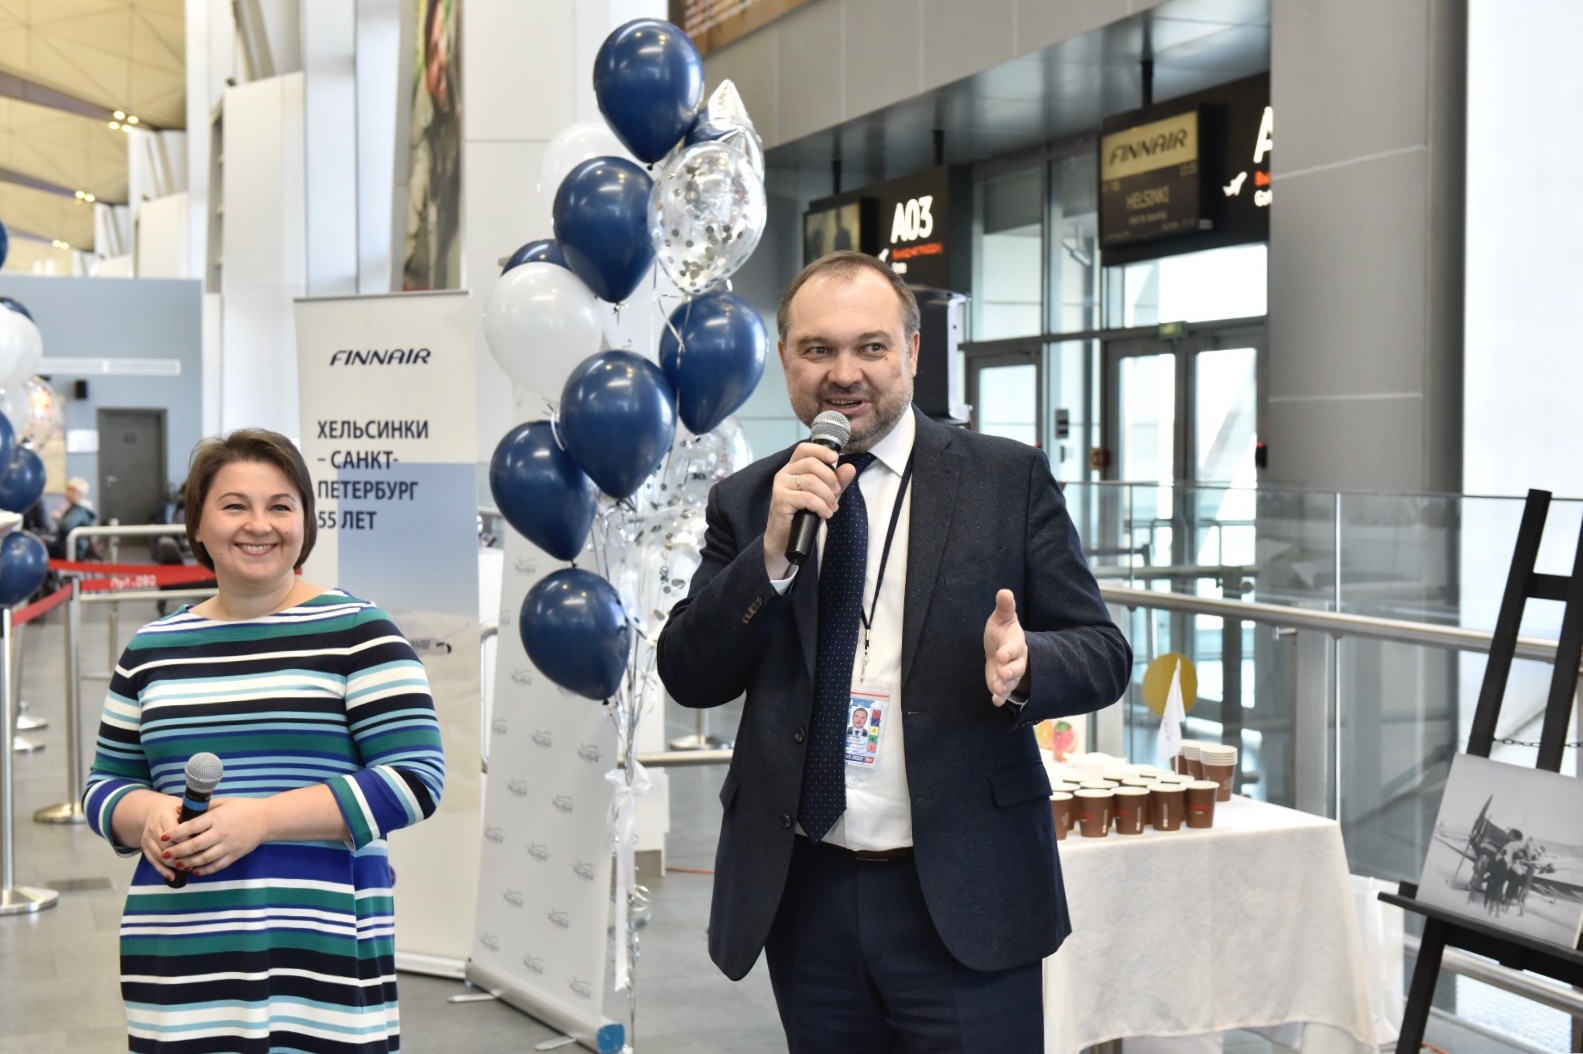 Пулково и Finnair празднуют 55 лет полетов по маршруту Хельсинки — Санкт-Петербург